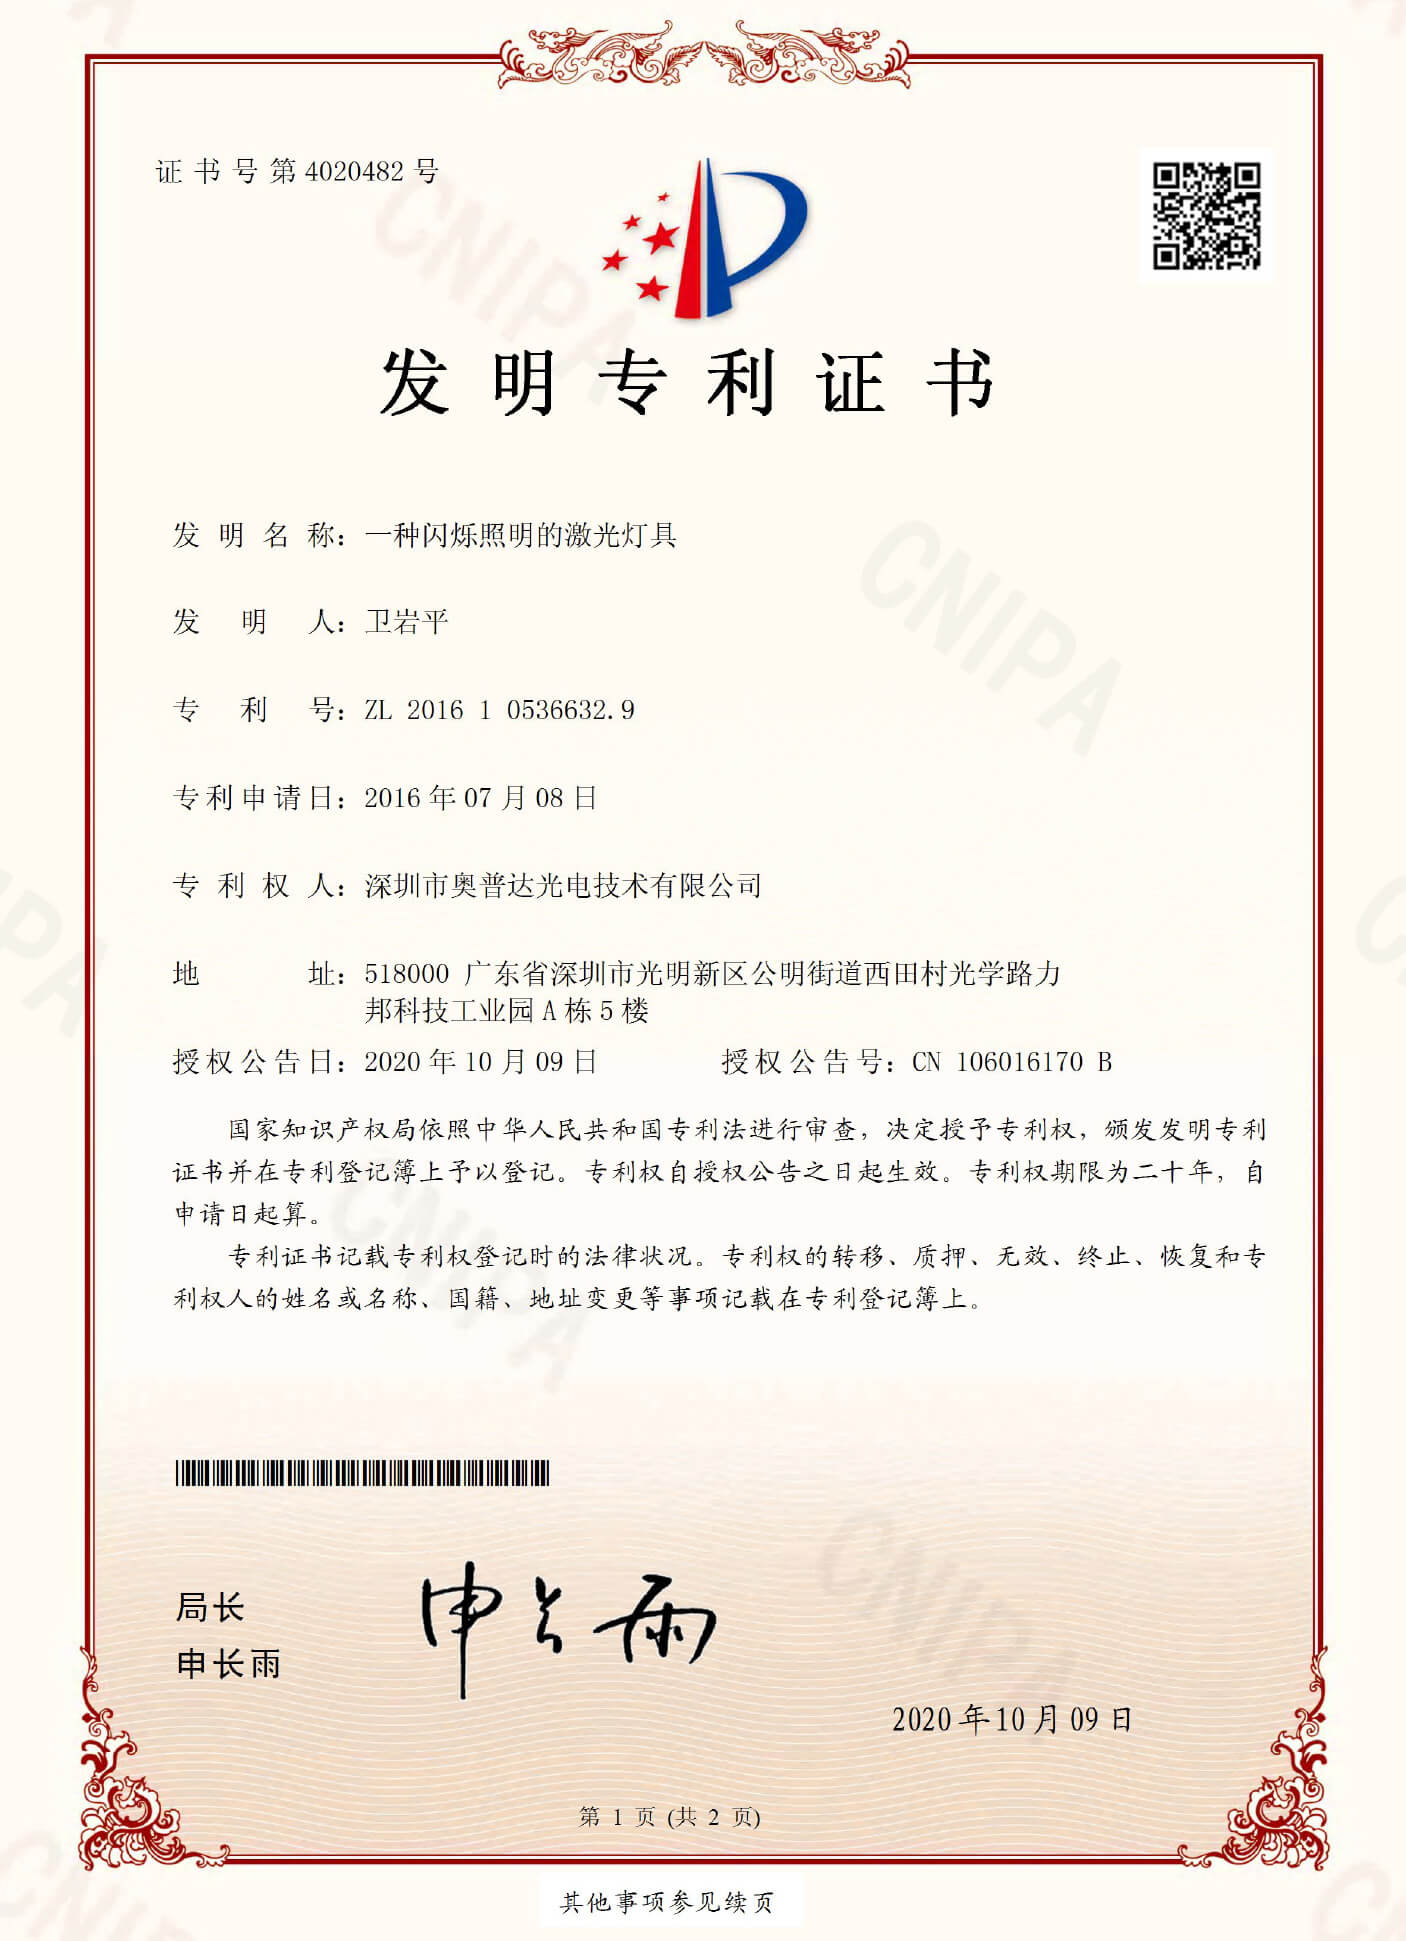 深圳市奥普达光电技术有限公司-2016105366329-发明专利证书(签章)